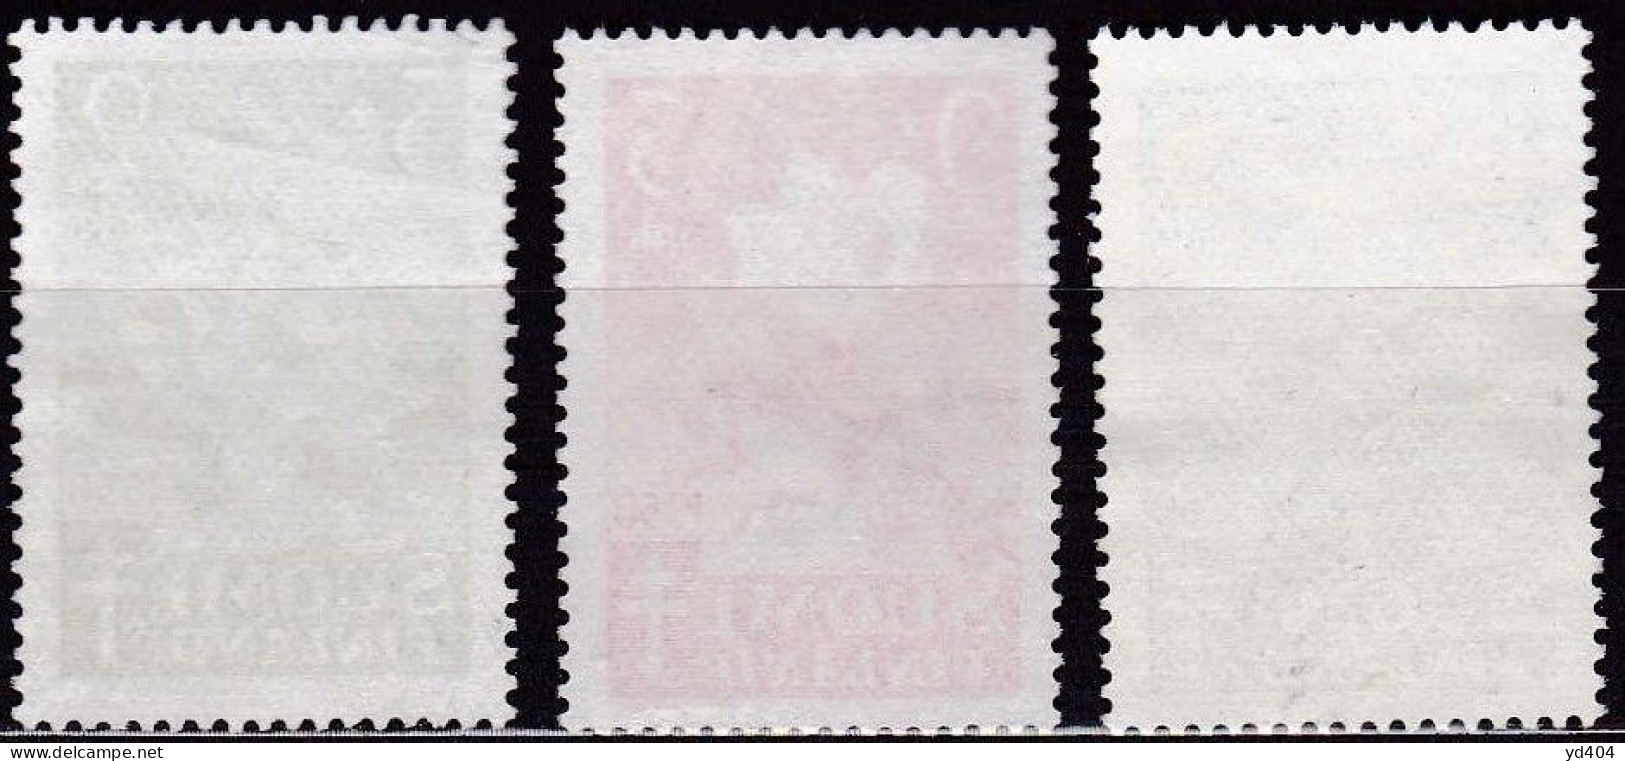 FI082 – FINLANDE – FINLAND – 1950 – ANTI-TUBERCULOSIS FUND – Y&T 368/70 USED 8,50 € - Oblitérés